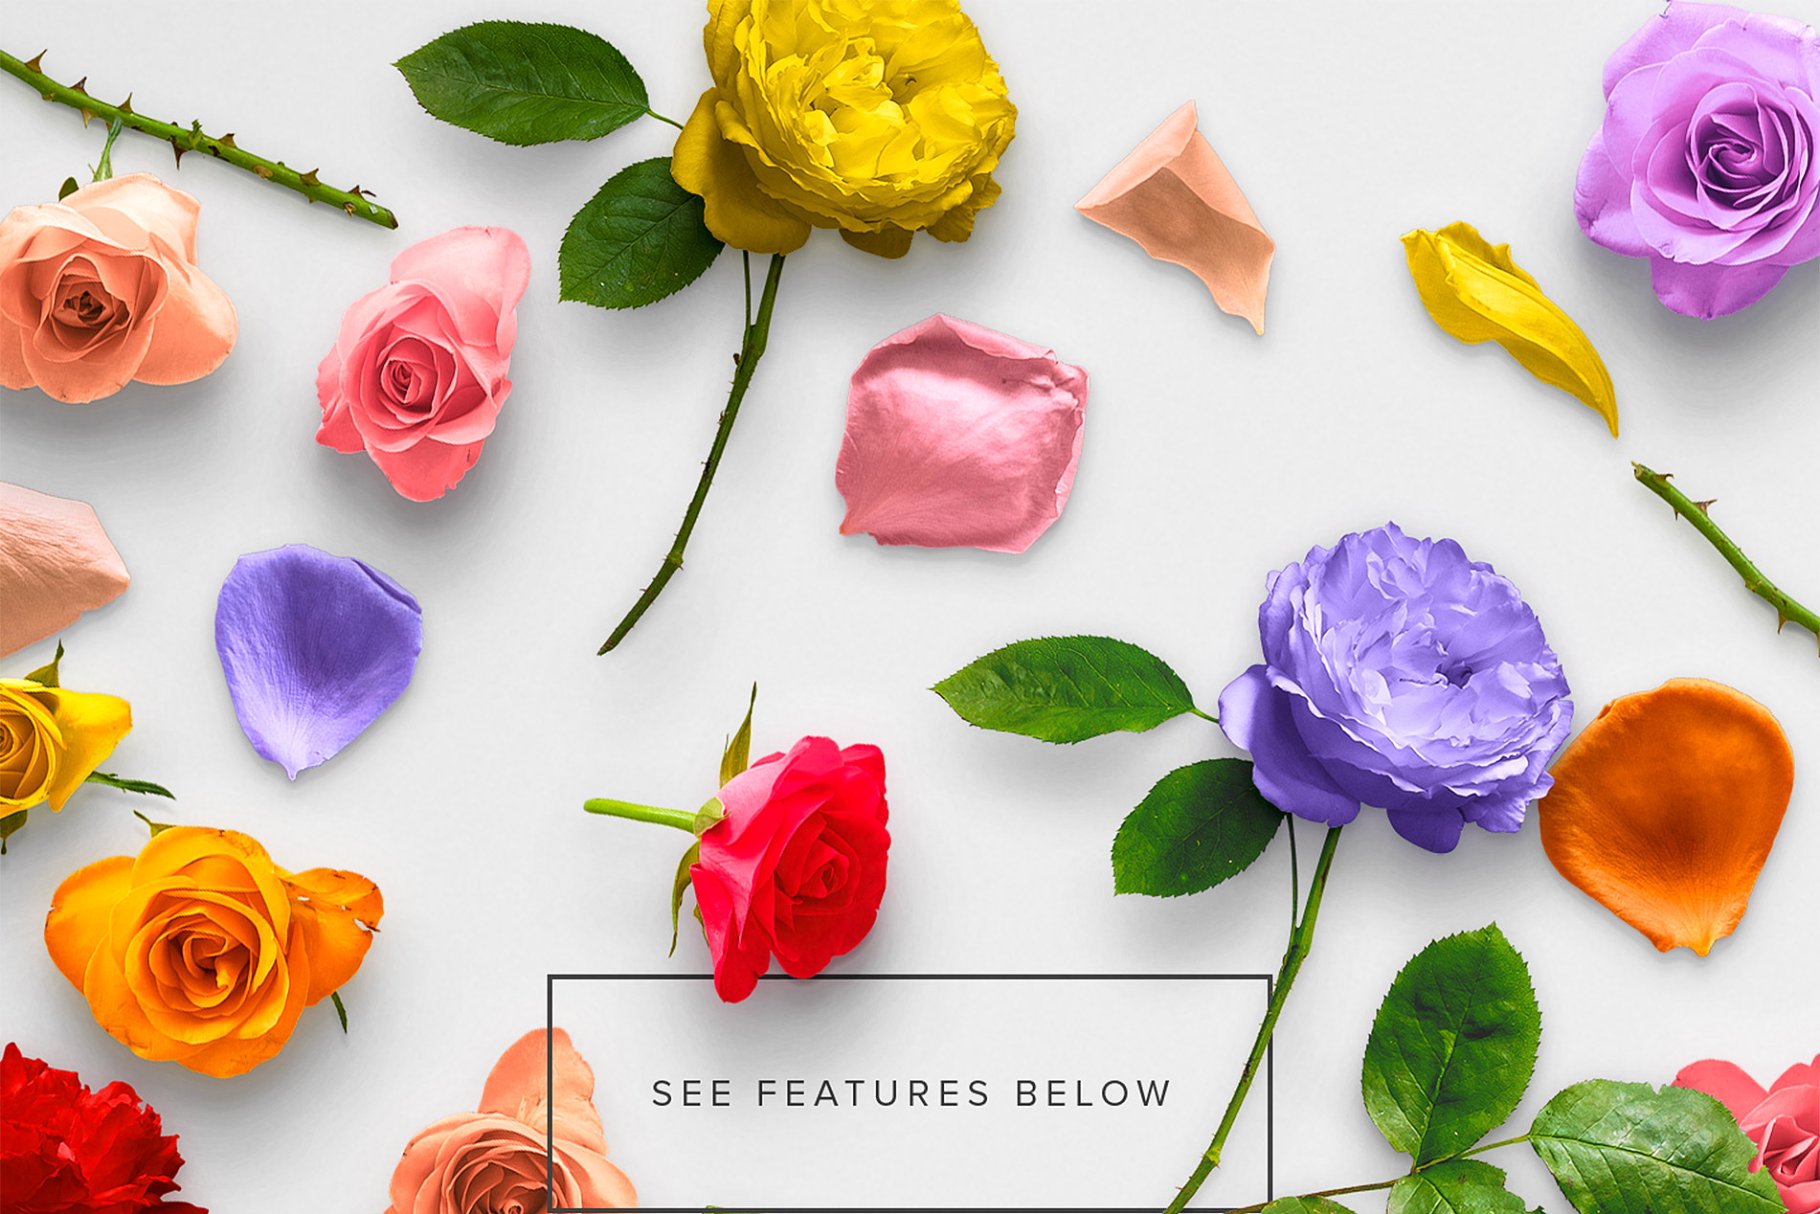 真实玫瑰花语场景设计素材包 Floral Roses Collection – CS插图(1)